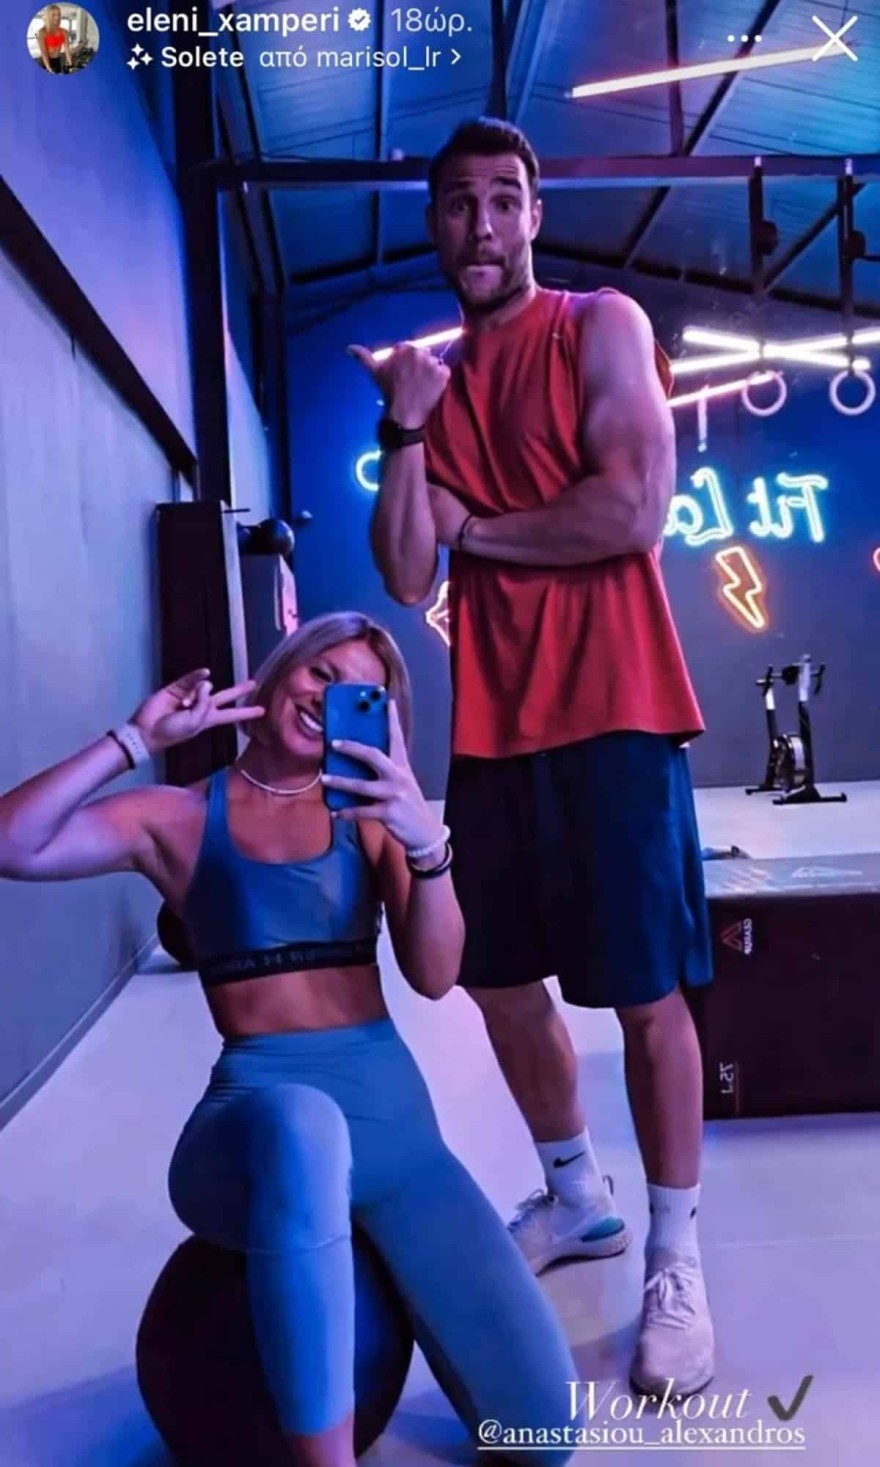 Η φωτογραφία της Ελένης Χαμπέρη με τον σύντροφό της μέσα από το γυμναστήριο 